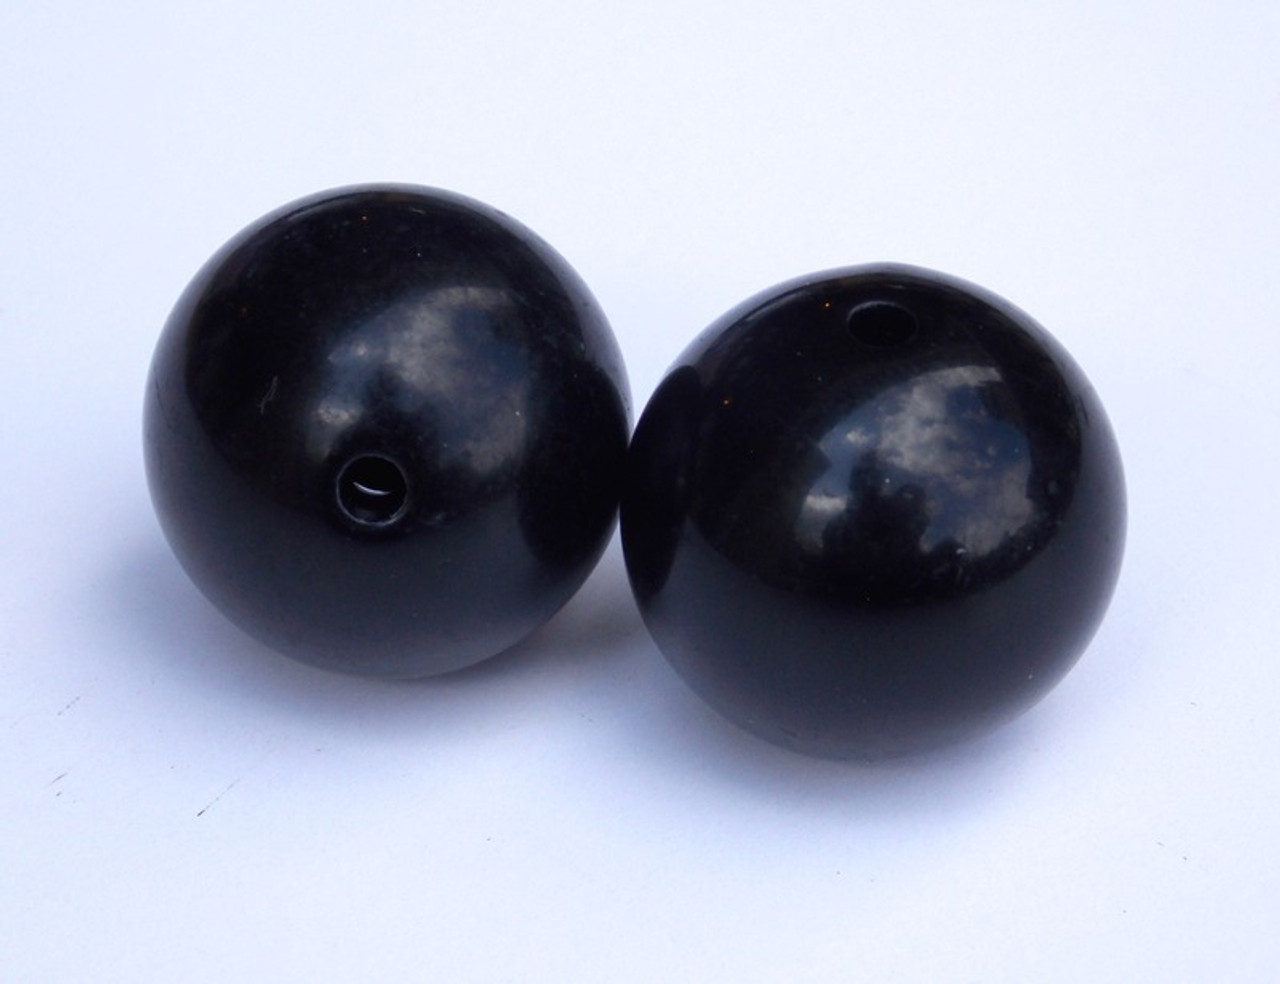 Outrigger Balls set of 2 1" black plastic balls